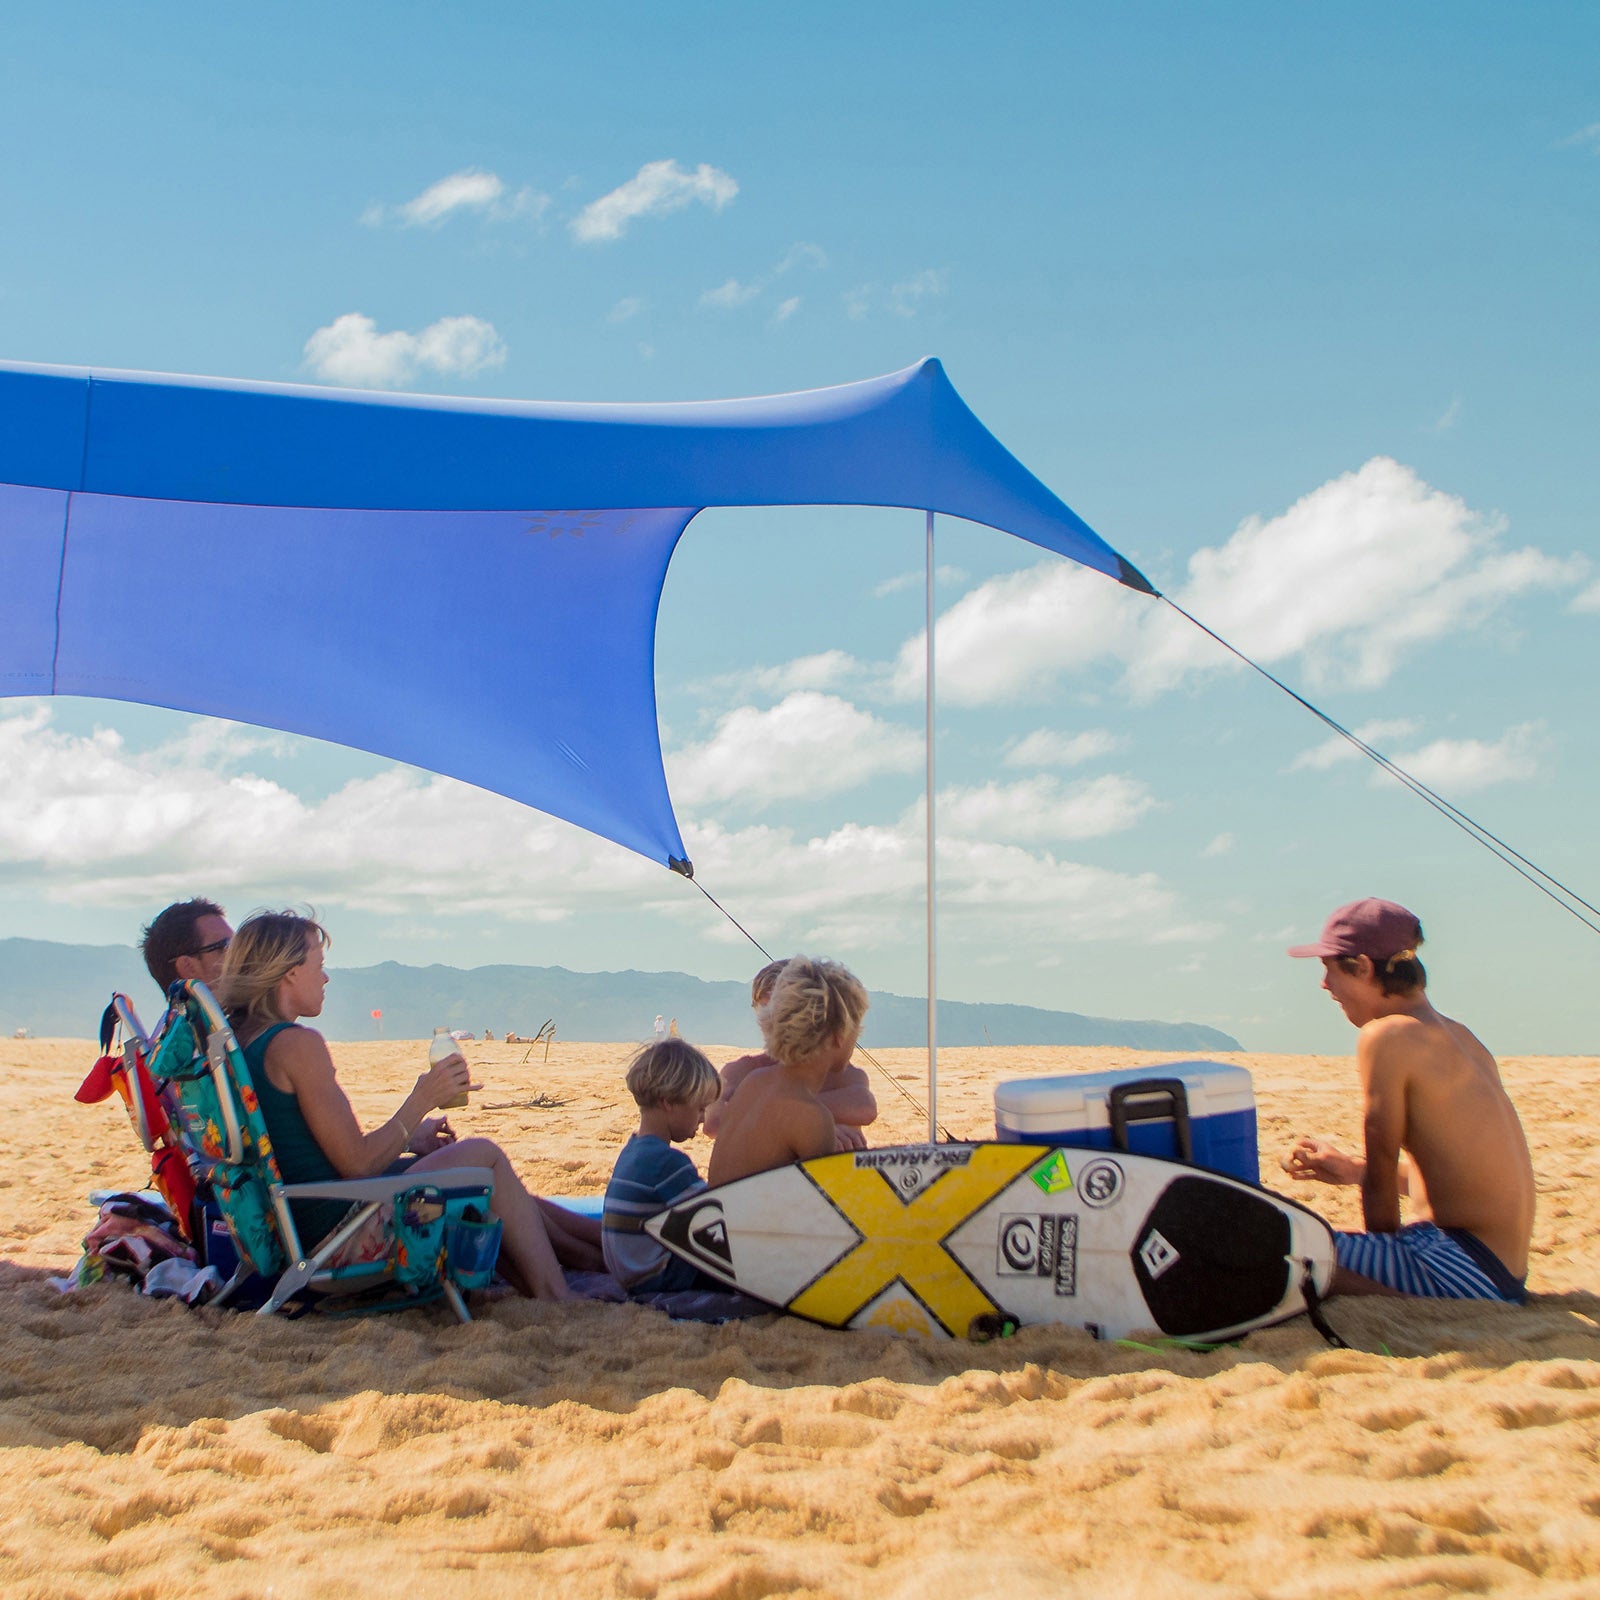 Neso Tenda da Spiaggia Tents con Ancoraggio a Sabbia, Parasole